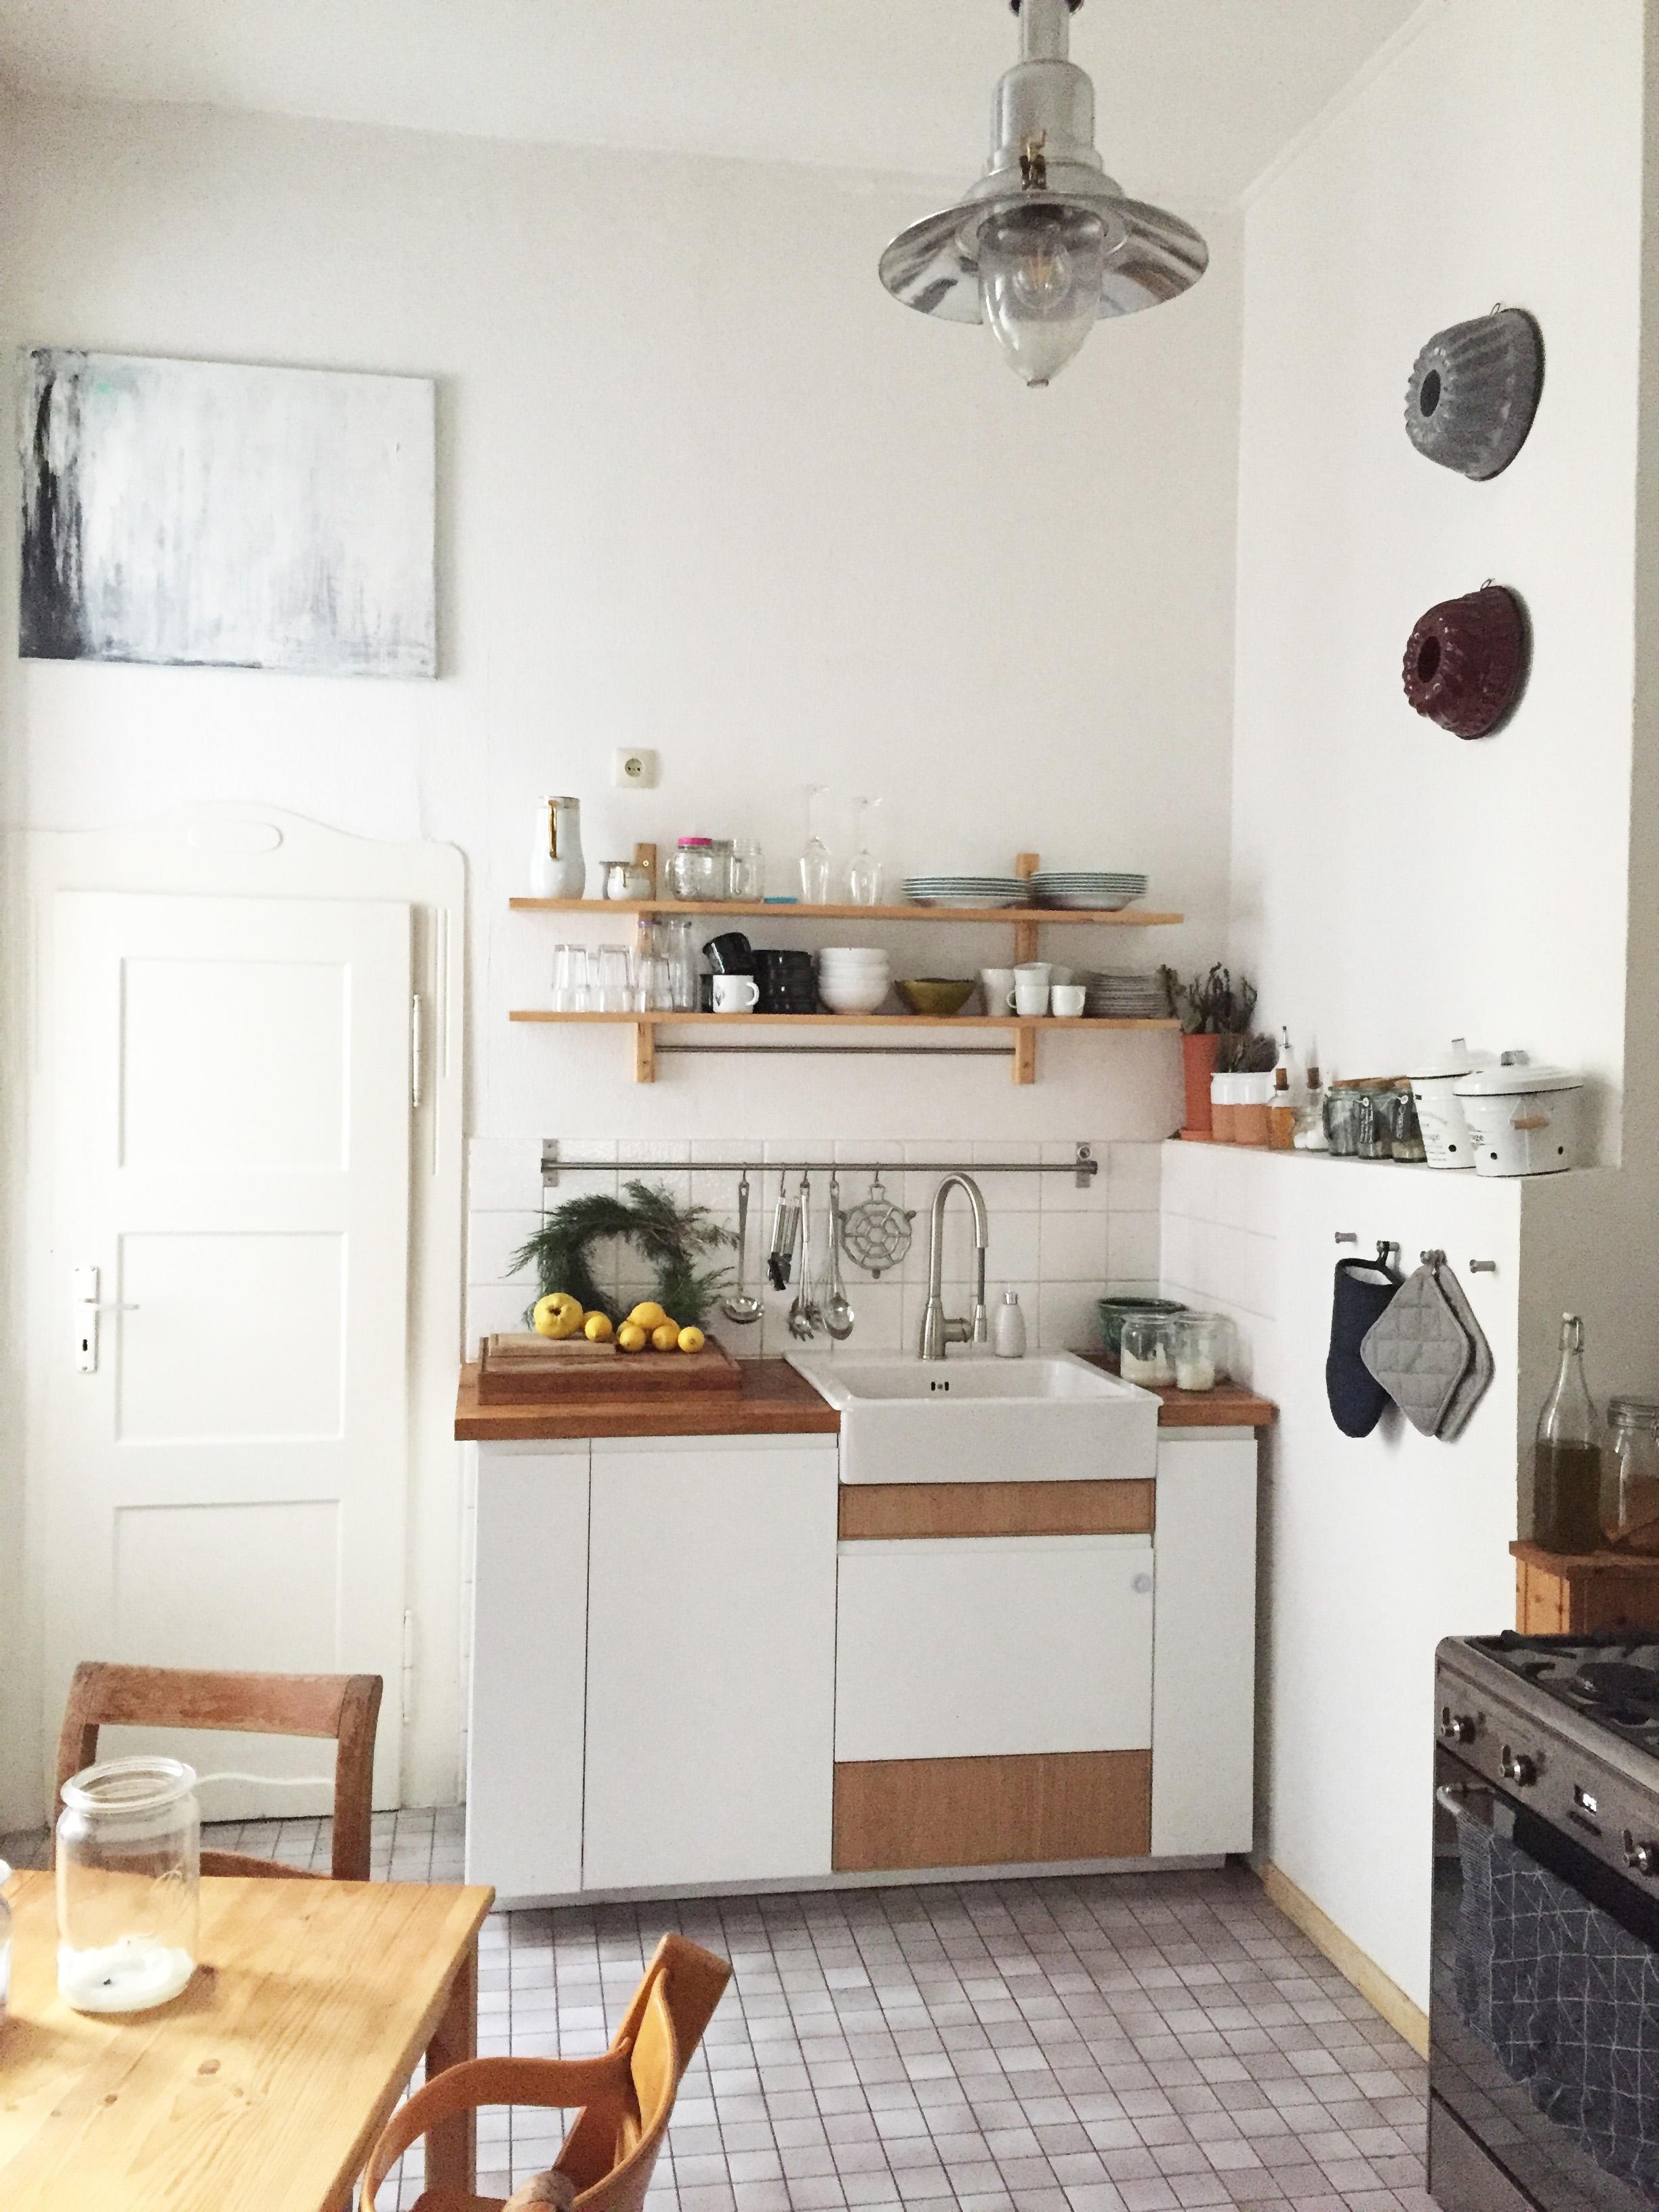 geschichten werden in der küche geschrieben. #küche #imraumdesign #interior #leben #familie 